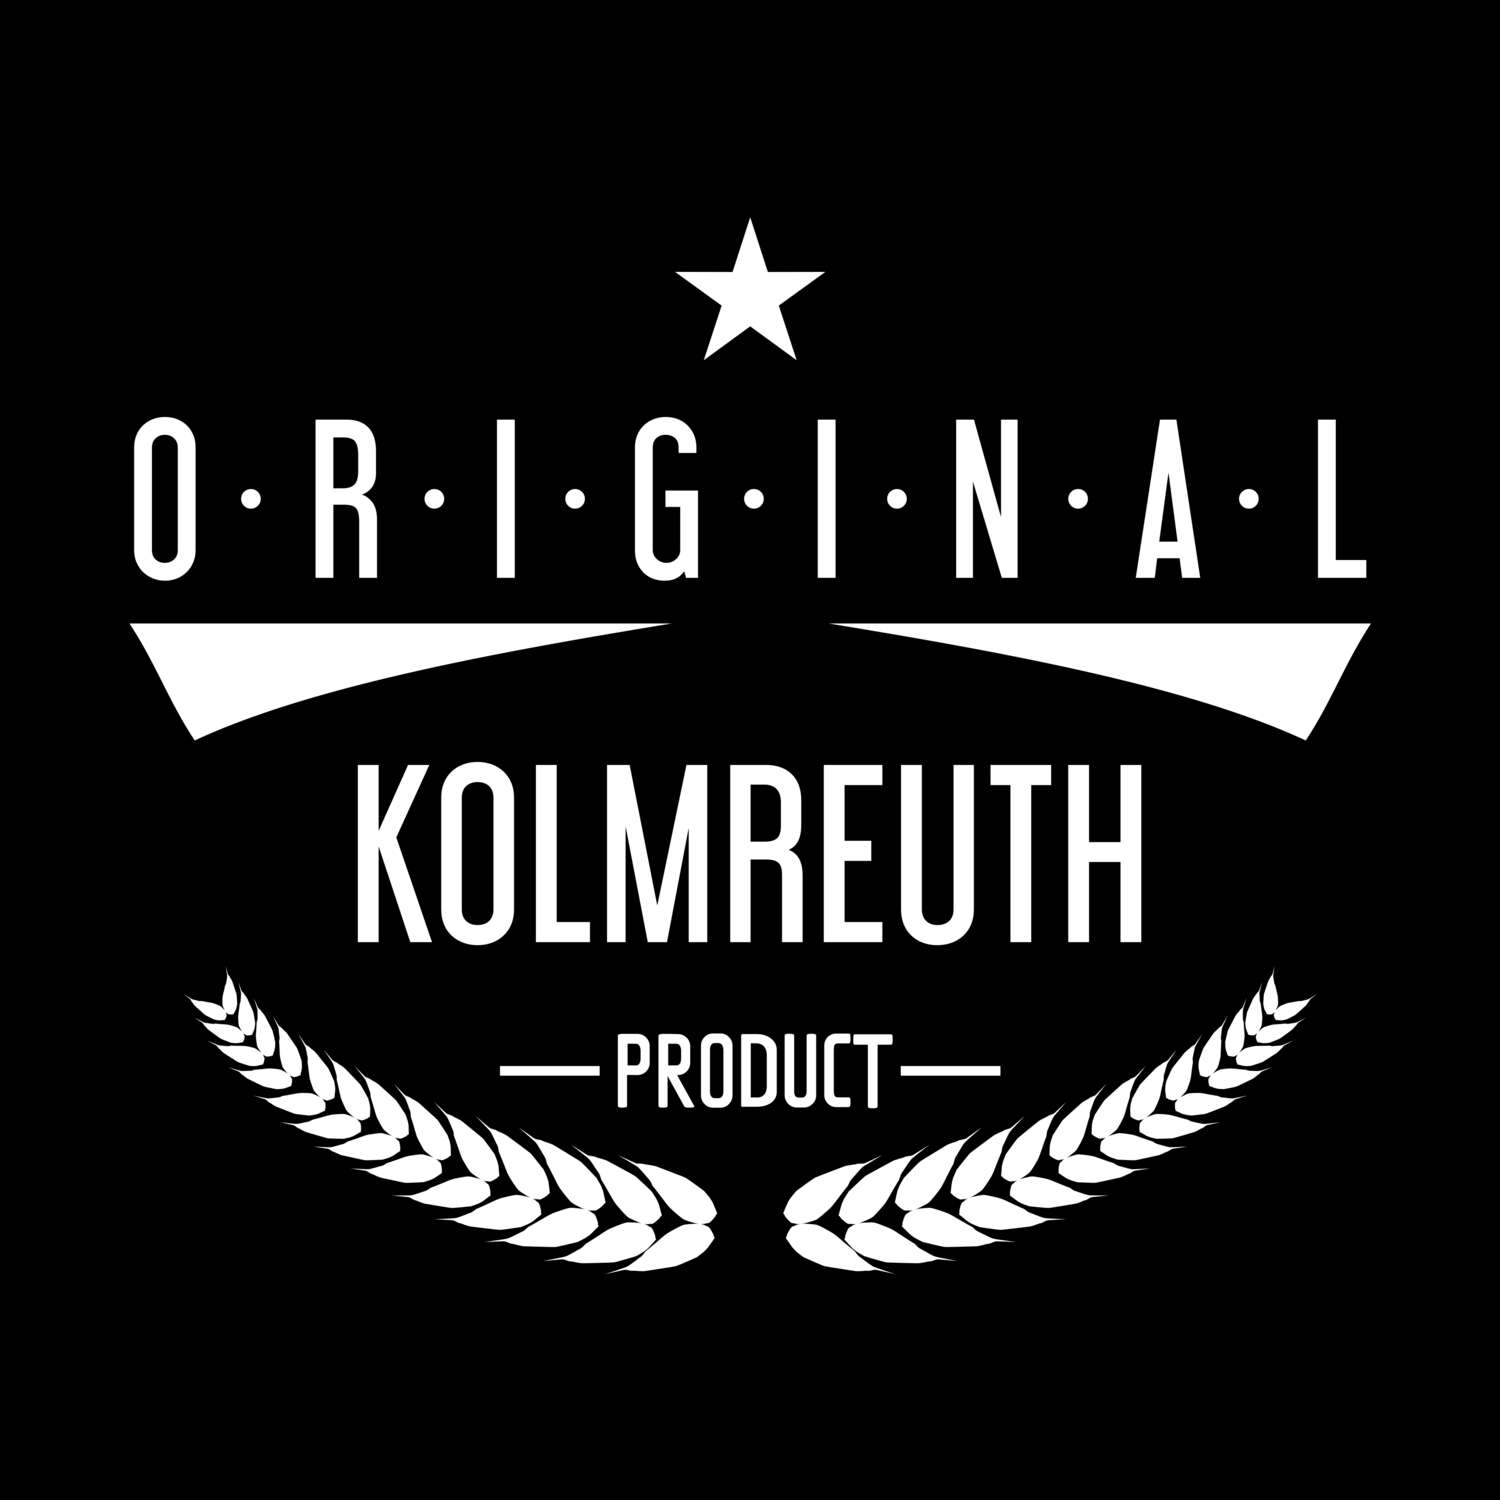 Kolmreuth T-Shirt »Original Product«